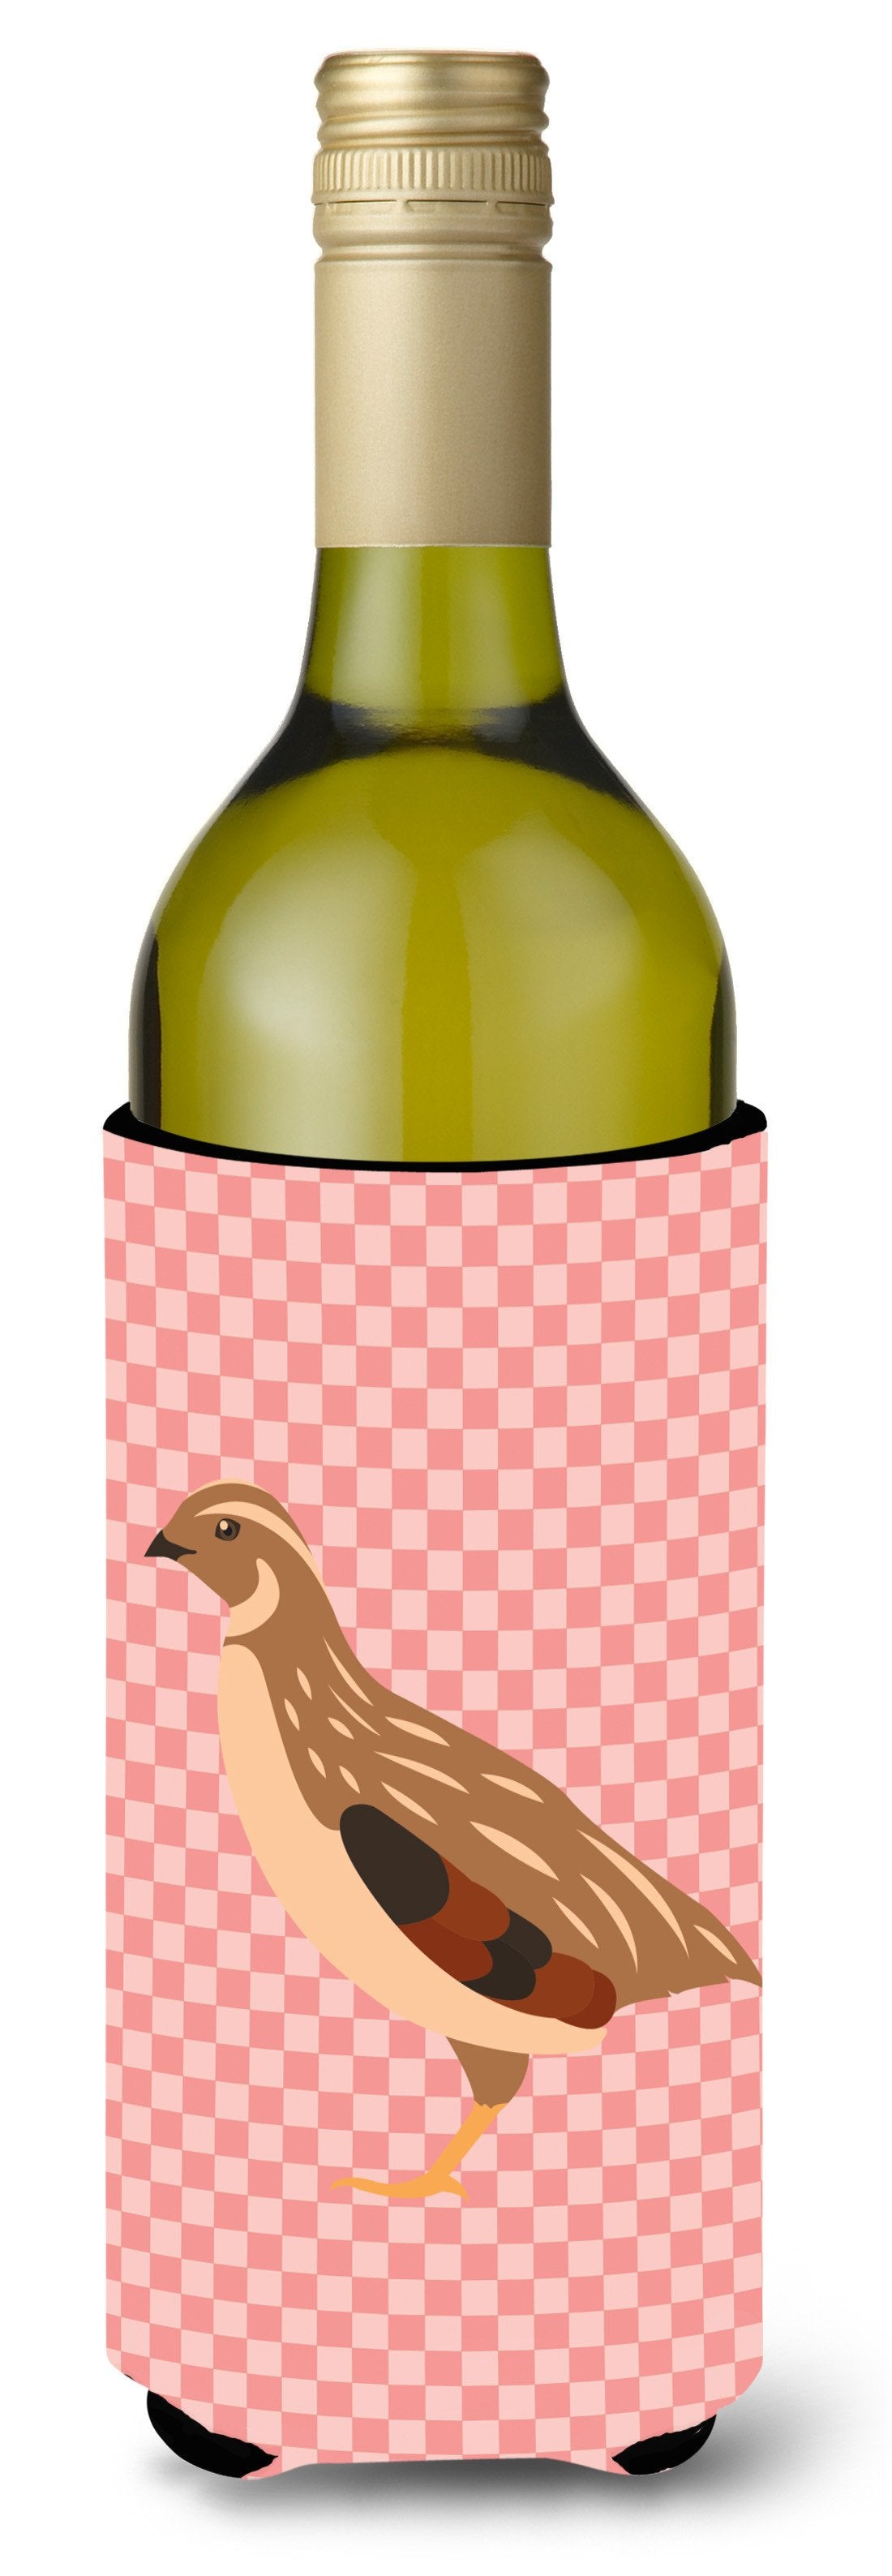 Golden Phoenix Quail Pink Check Wine Bottle Beverge Insulator Hugger BB7955LITERK by Caroline's Treasures